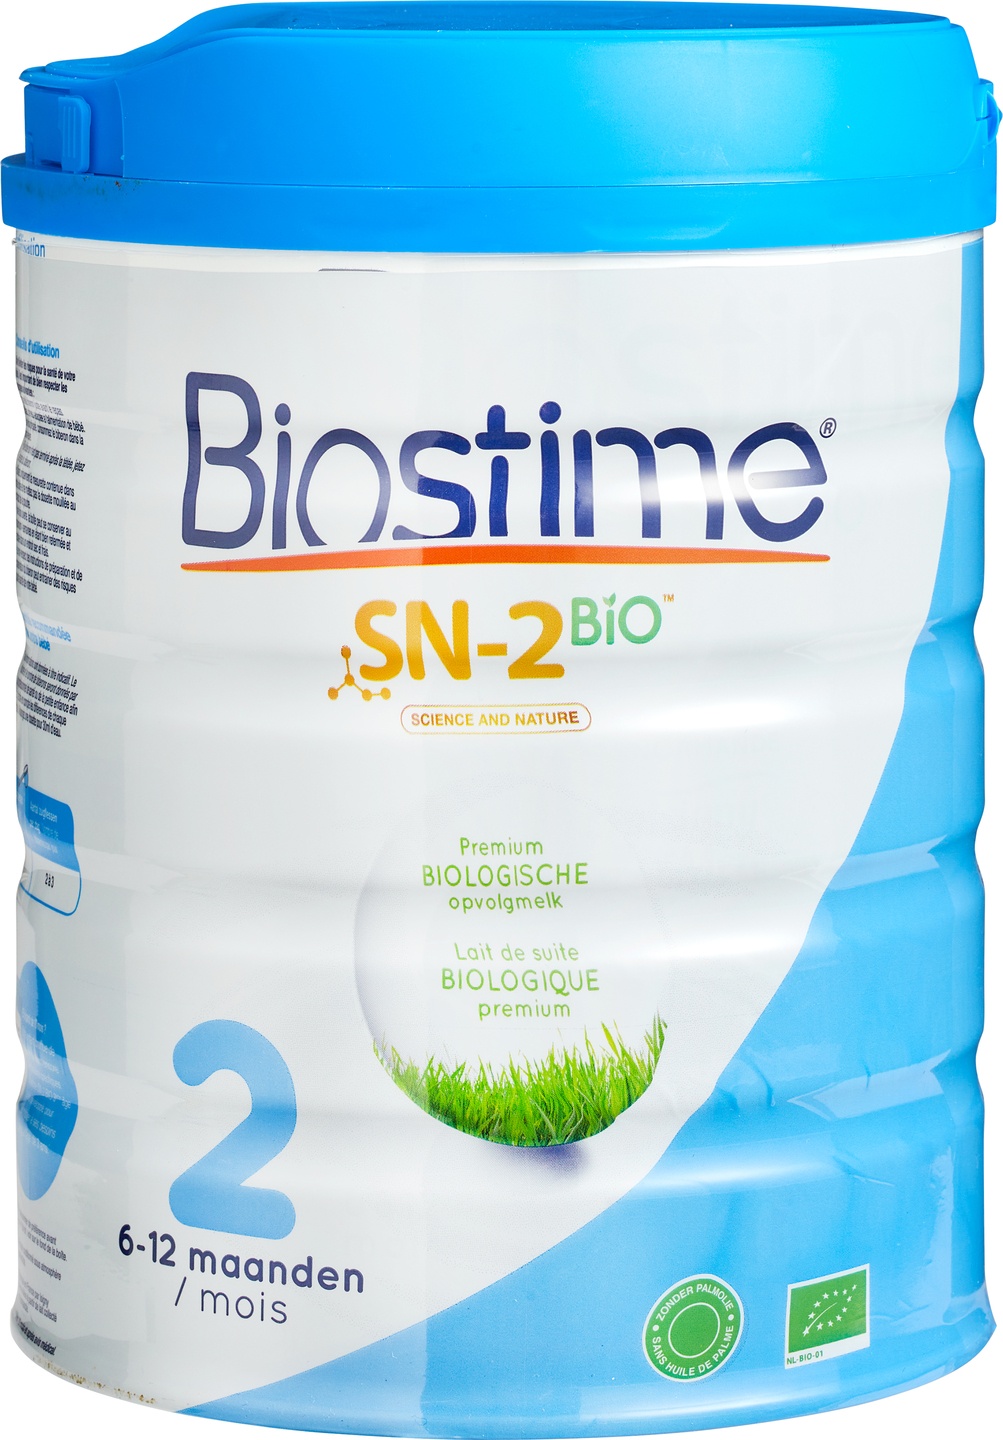 Biostime SN-2 BIO 2 Lait de suite biologique premium, lait en